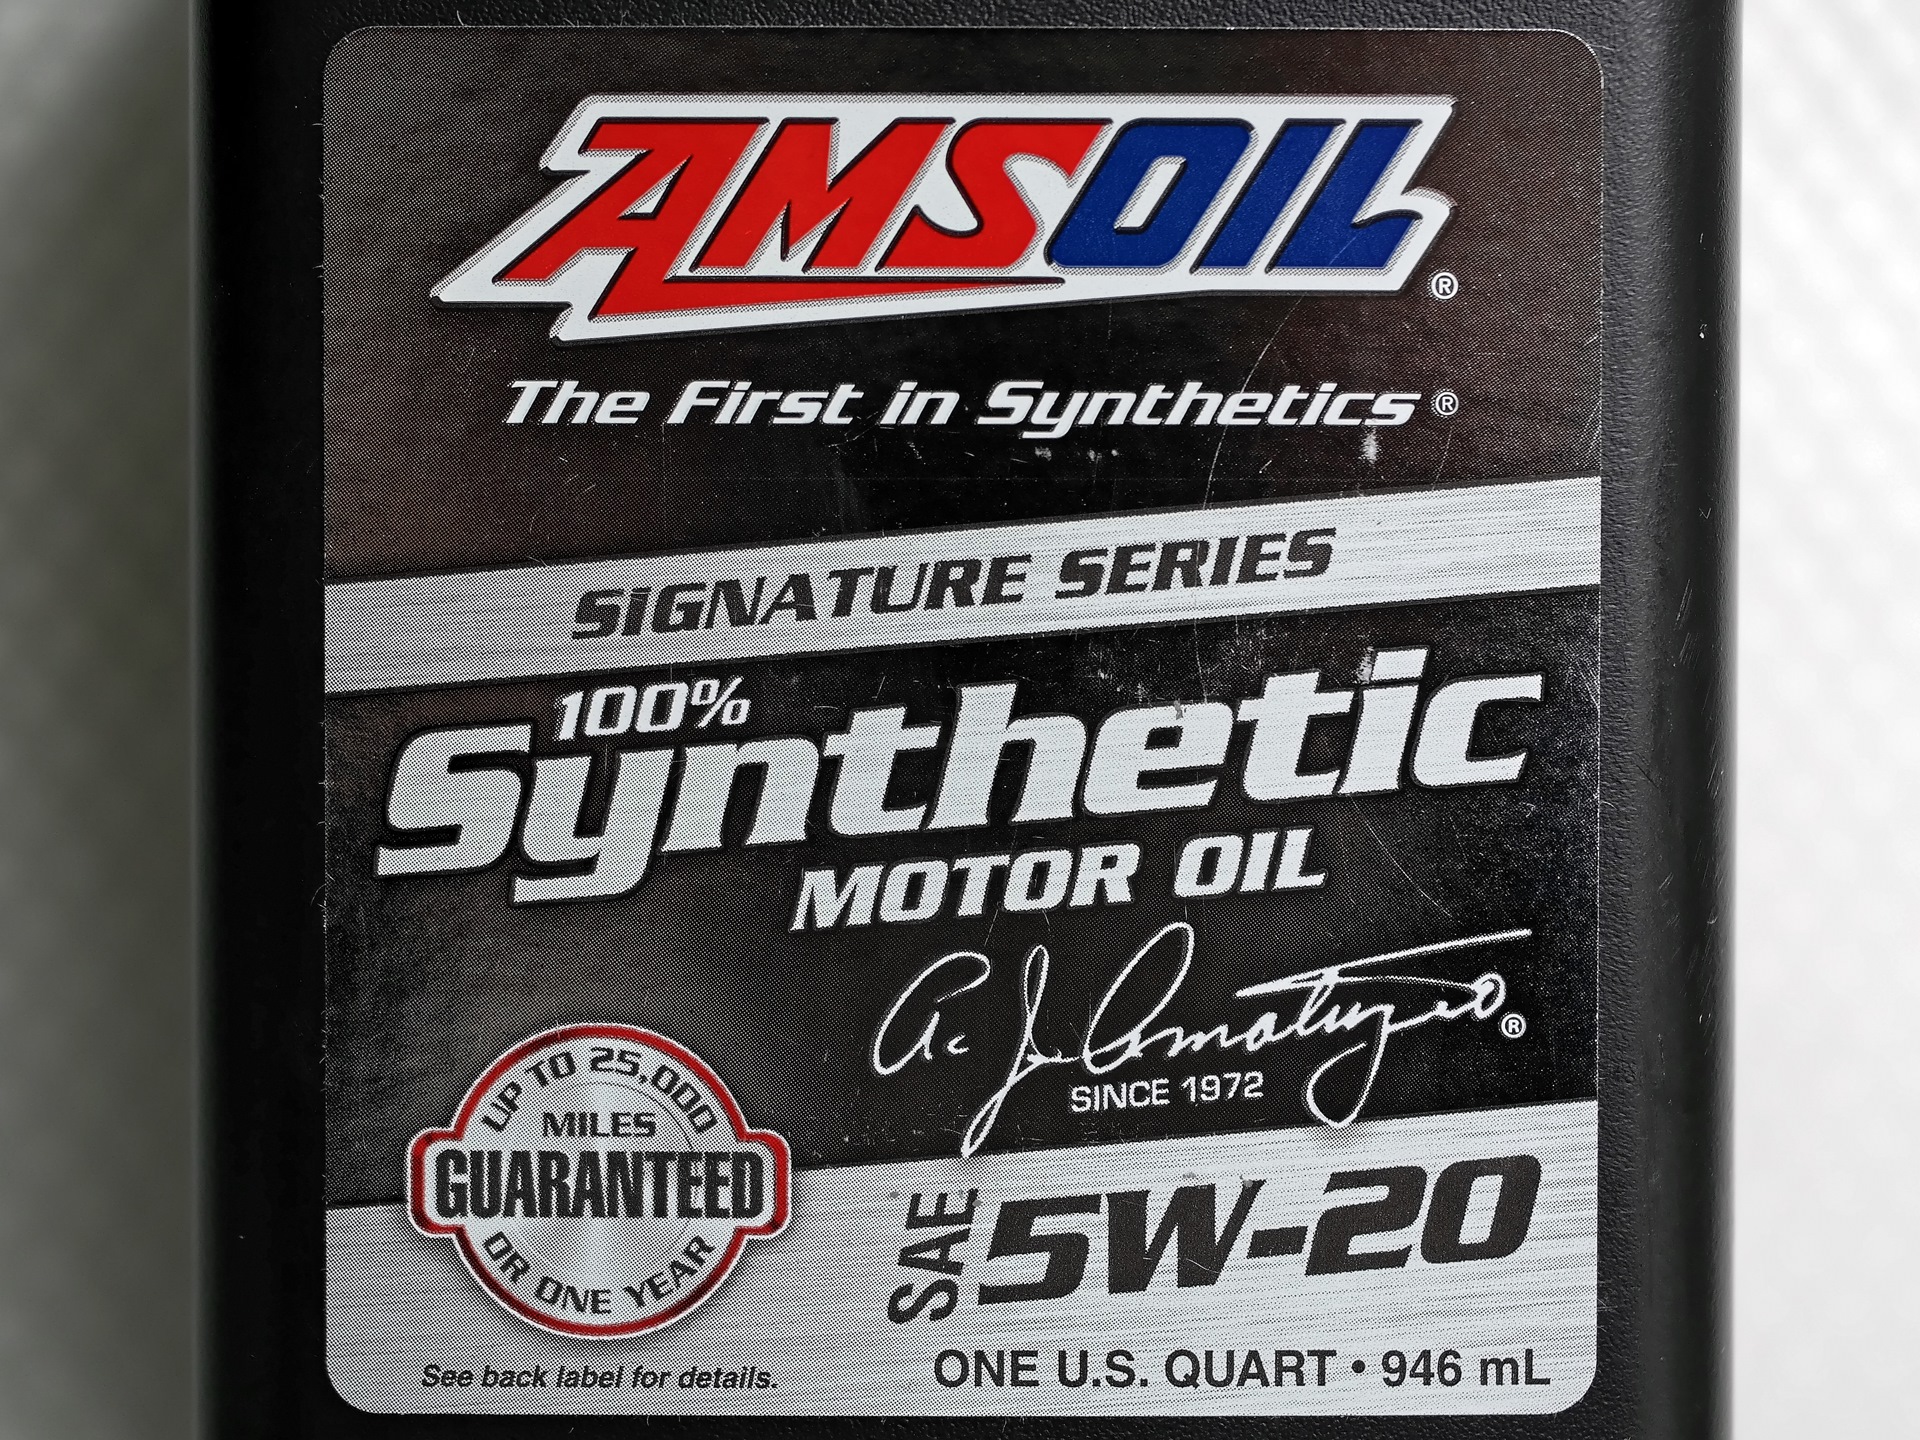 AMSOIL 5w20. AMSOIL 5w20 артикул. Аmsoil Signature Series 100% Synthetic 5w-30. AMSOIL Signature Series Synthetic Motor Oil 5w-30. Signature series synthetic